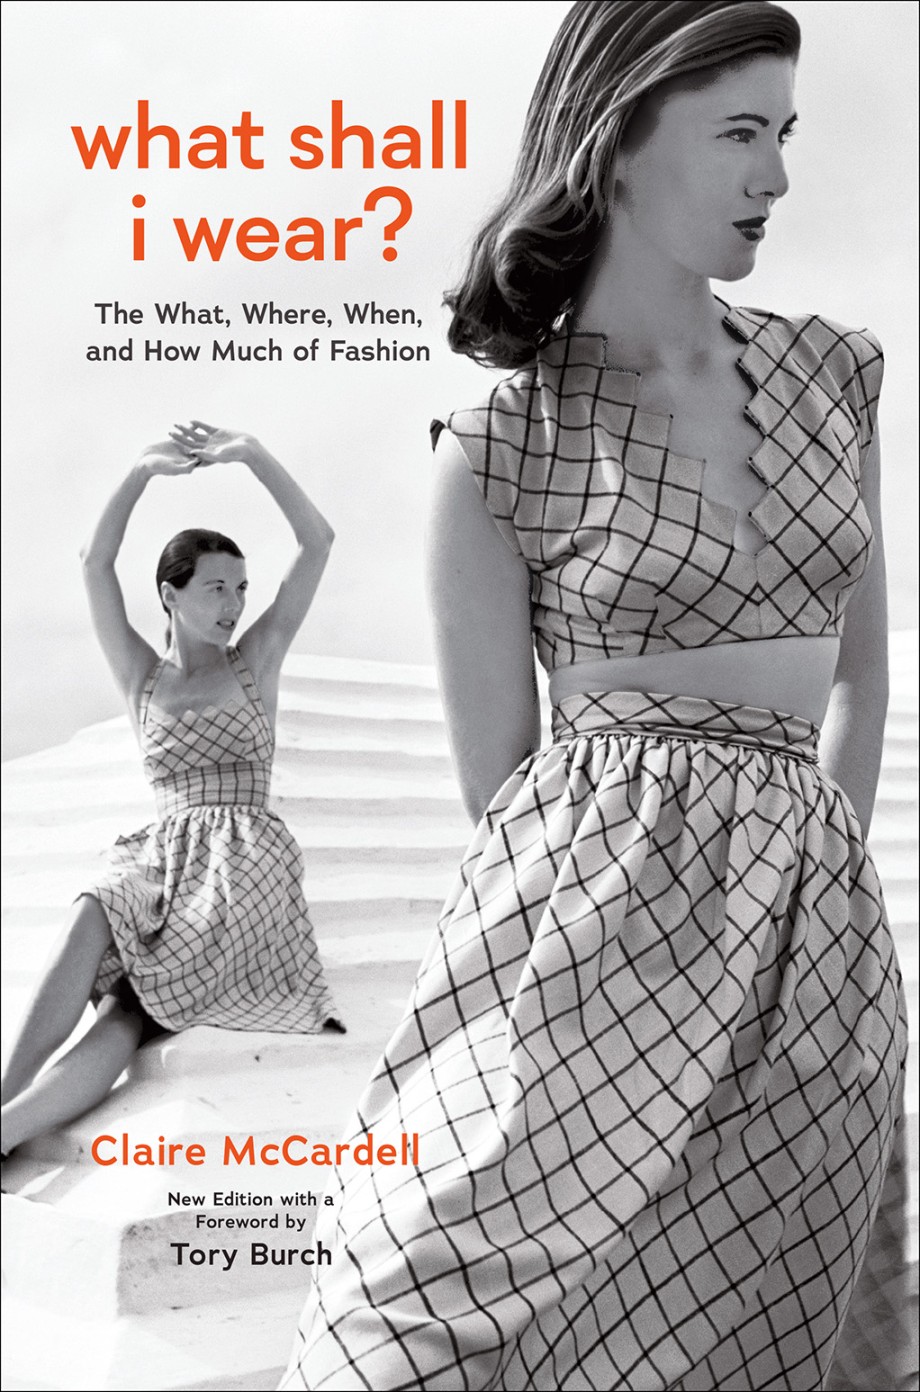 Tory Burch Biography - How Tory Burch Got Her Start in Fashion